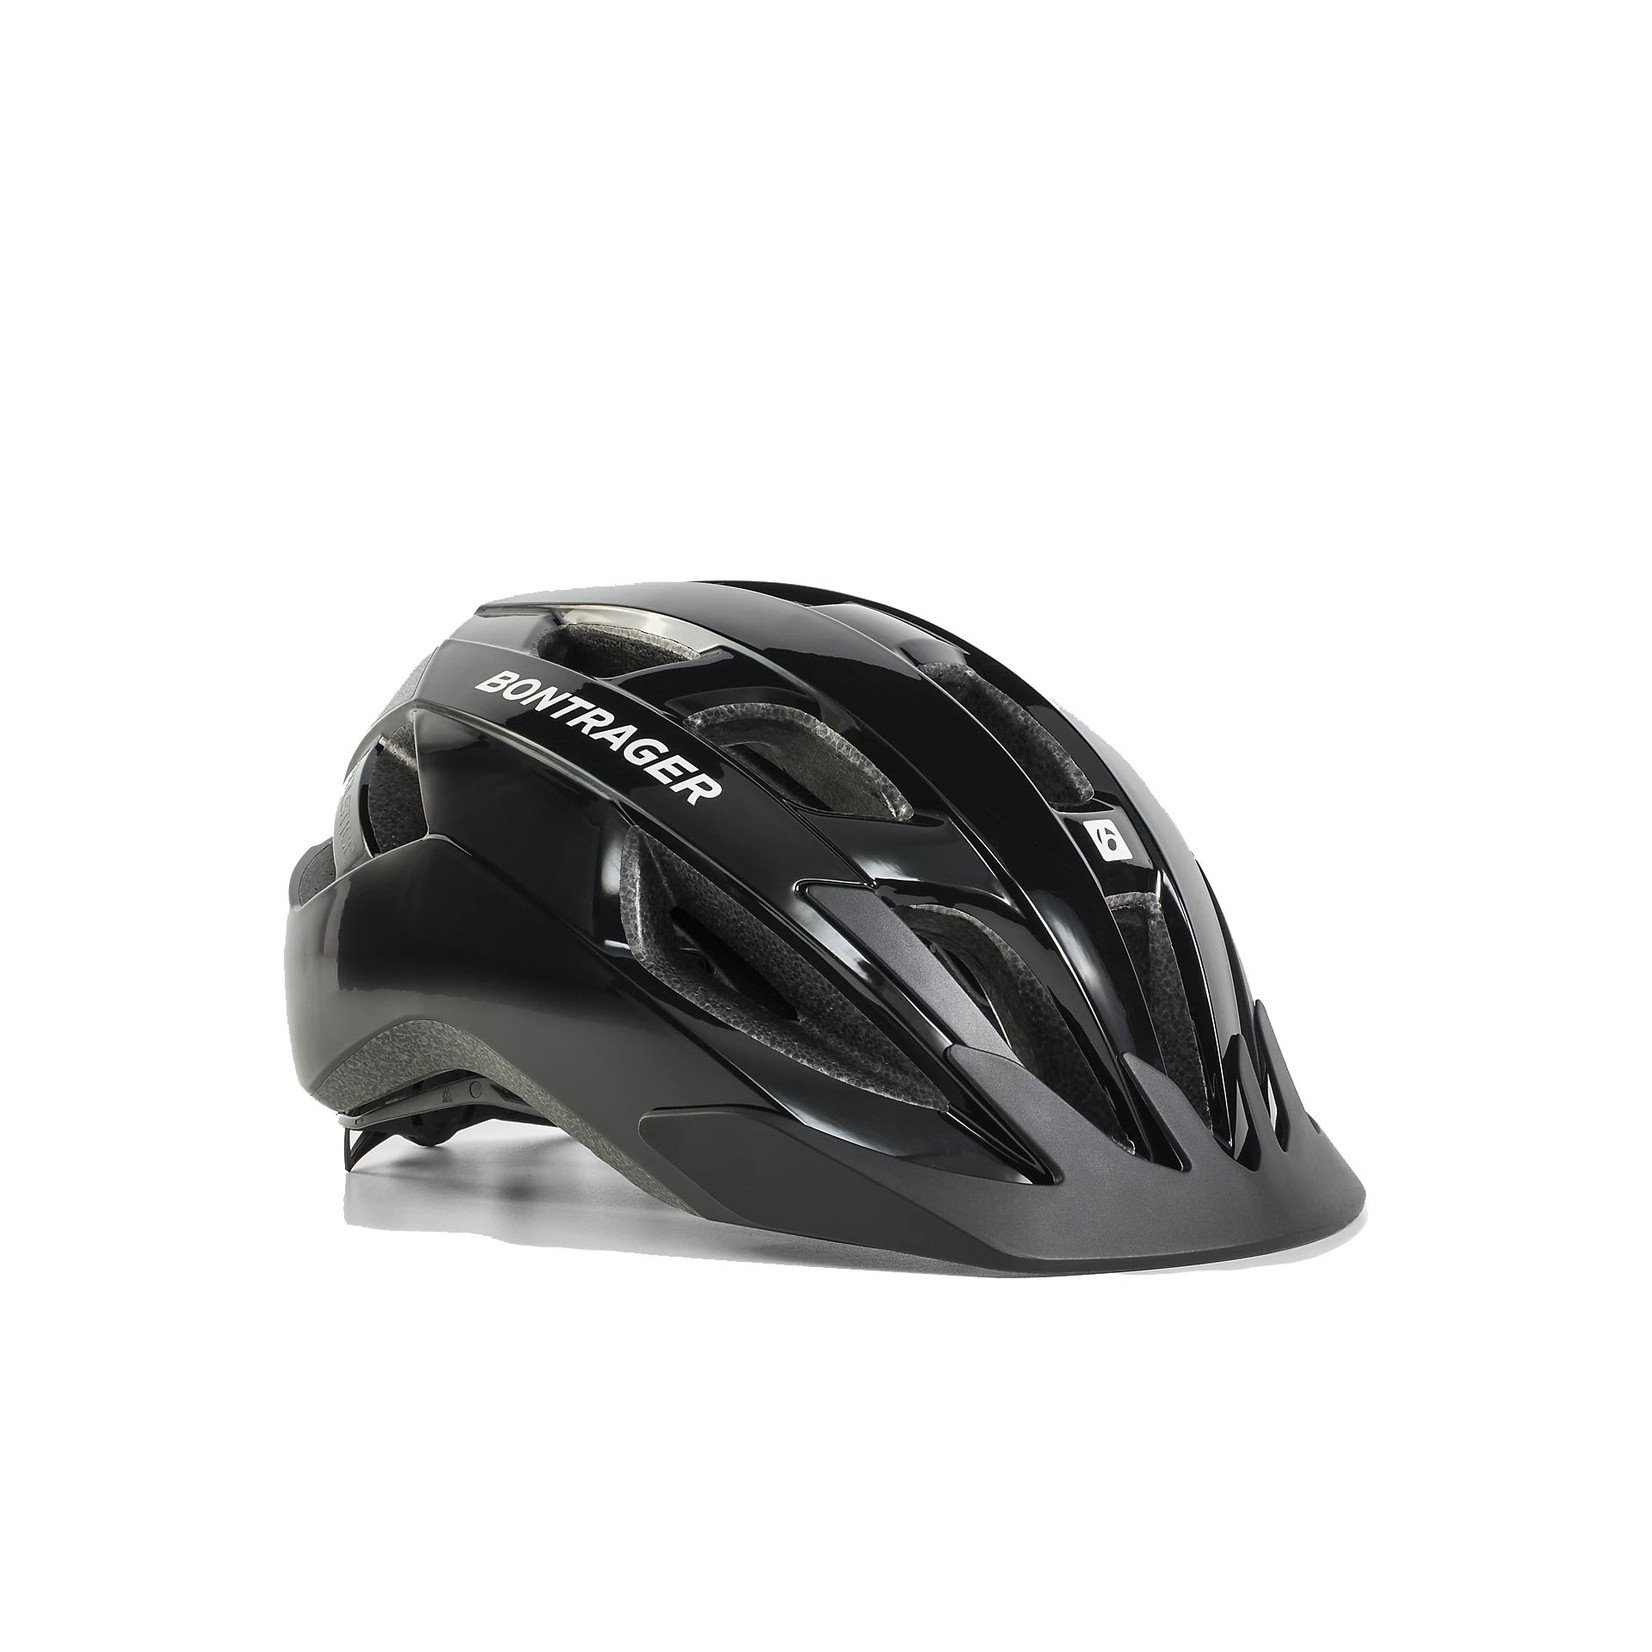 Bontrager Bontrager Solstice Bike Helmet Black Medium/Large (55-61 cm)